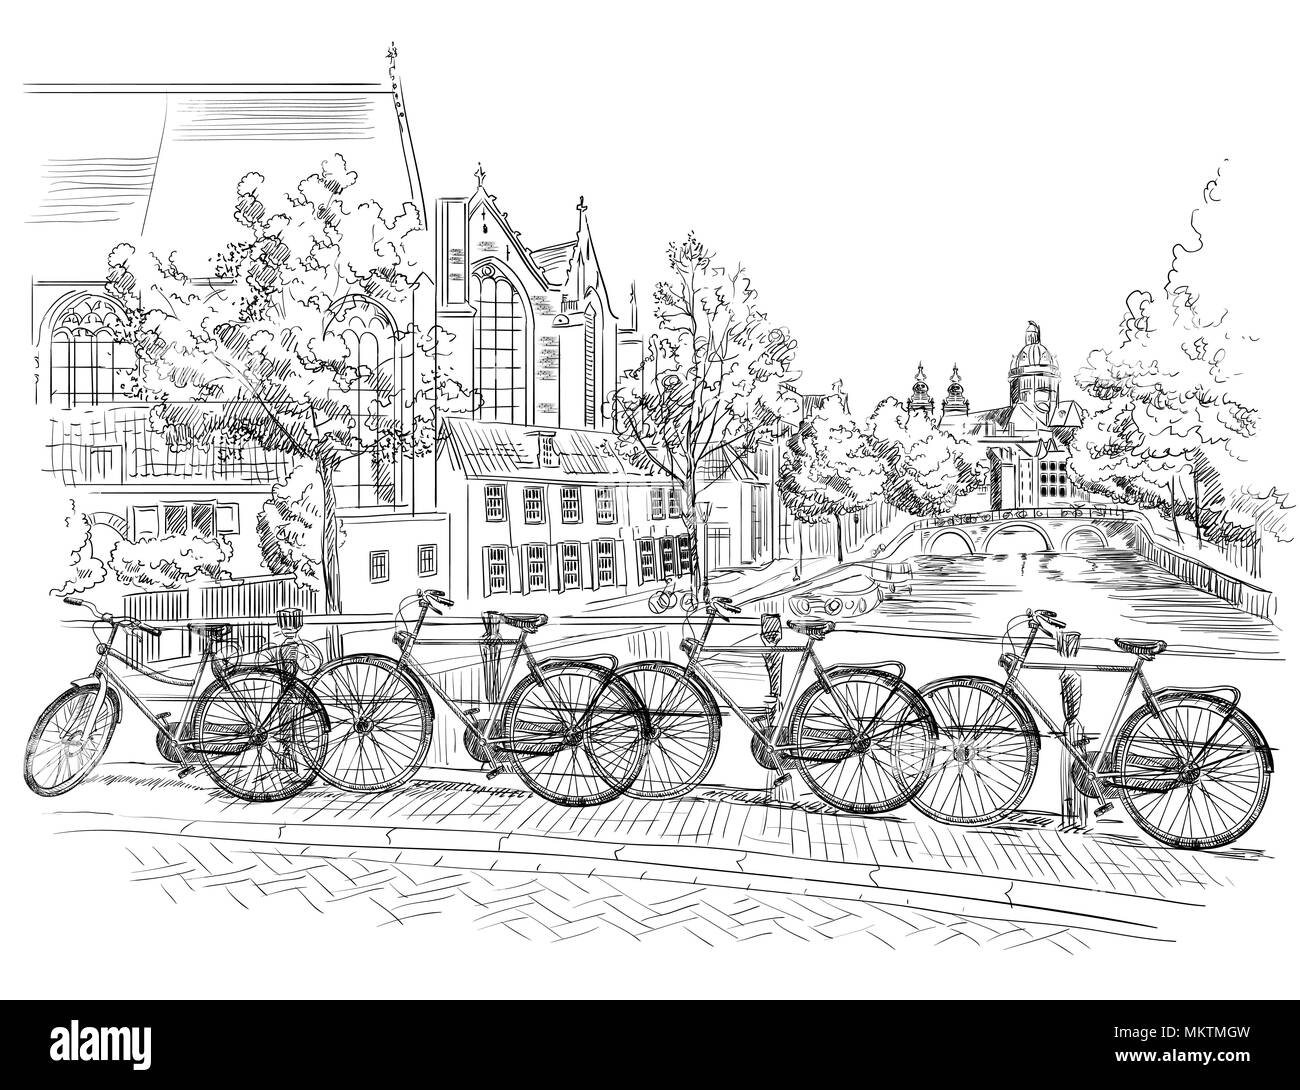 Fahrräder auf der Brücke über die Kanäle von Amsterdam, Niederlande. Wahrzeichen der Niederlande. Vektor hand Zeichnung Abbildung in Farbe Schwarz auf Weiss isoliert Stock Vektor